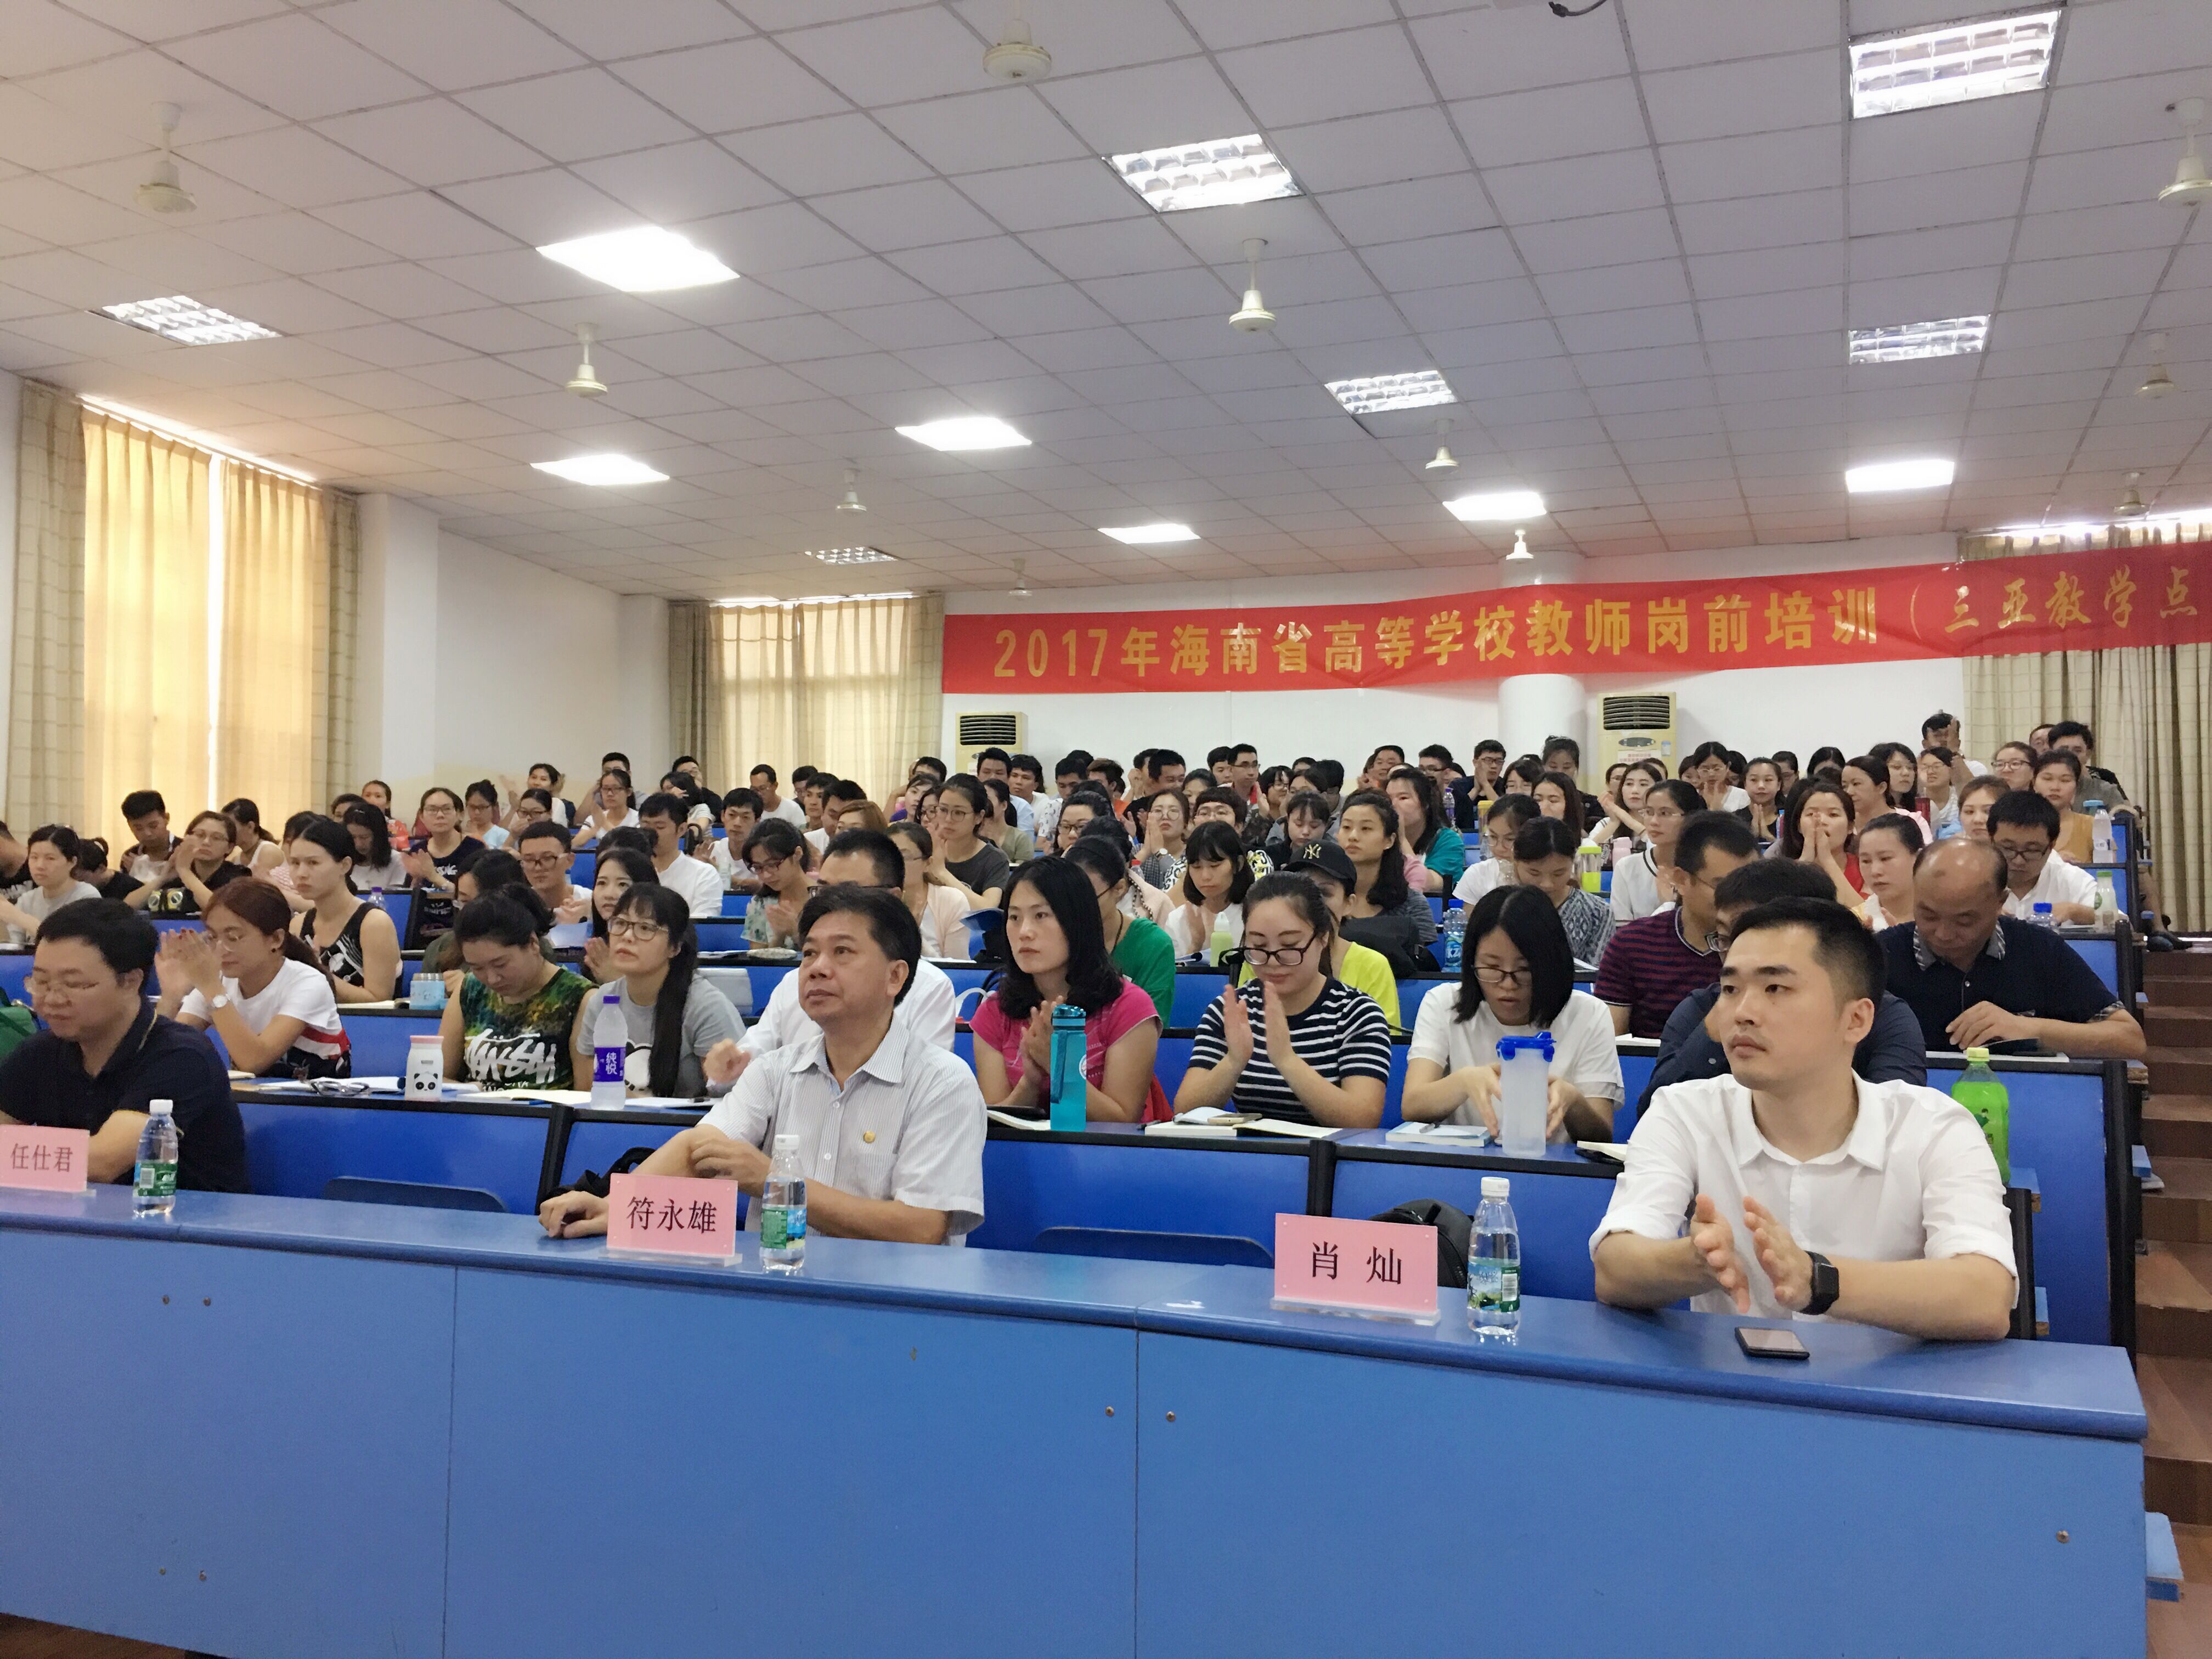 2017年海南省高校教师岗前培训工作正式启动